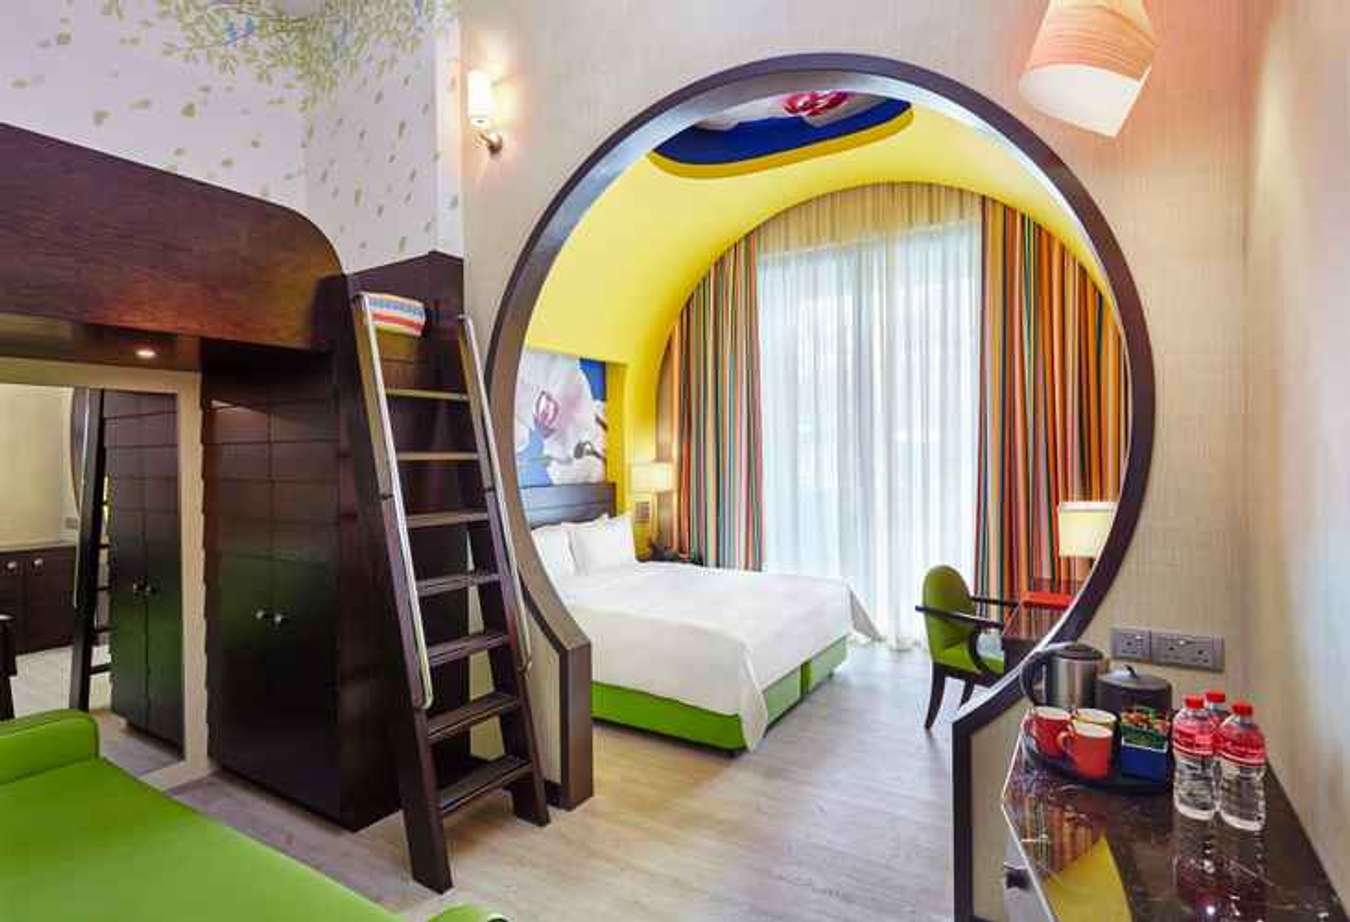 Resorts World Sentosa - Festive Hotel - Best Hotel for Family Staycation